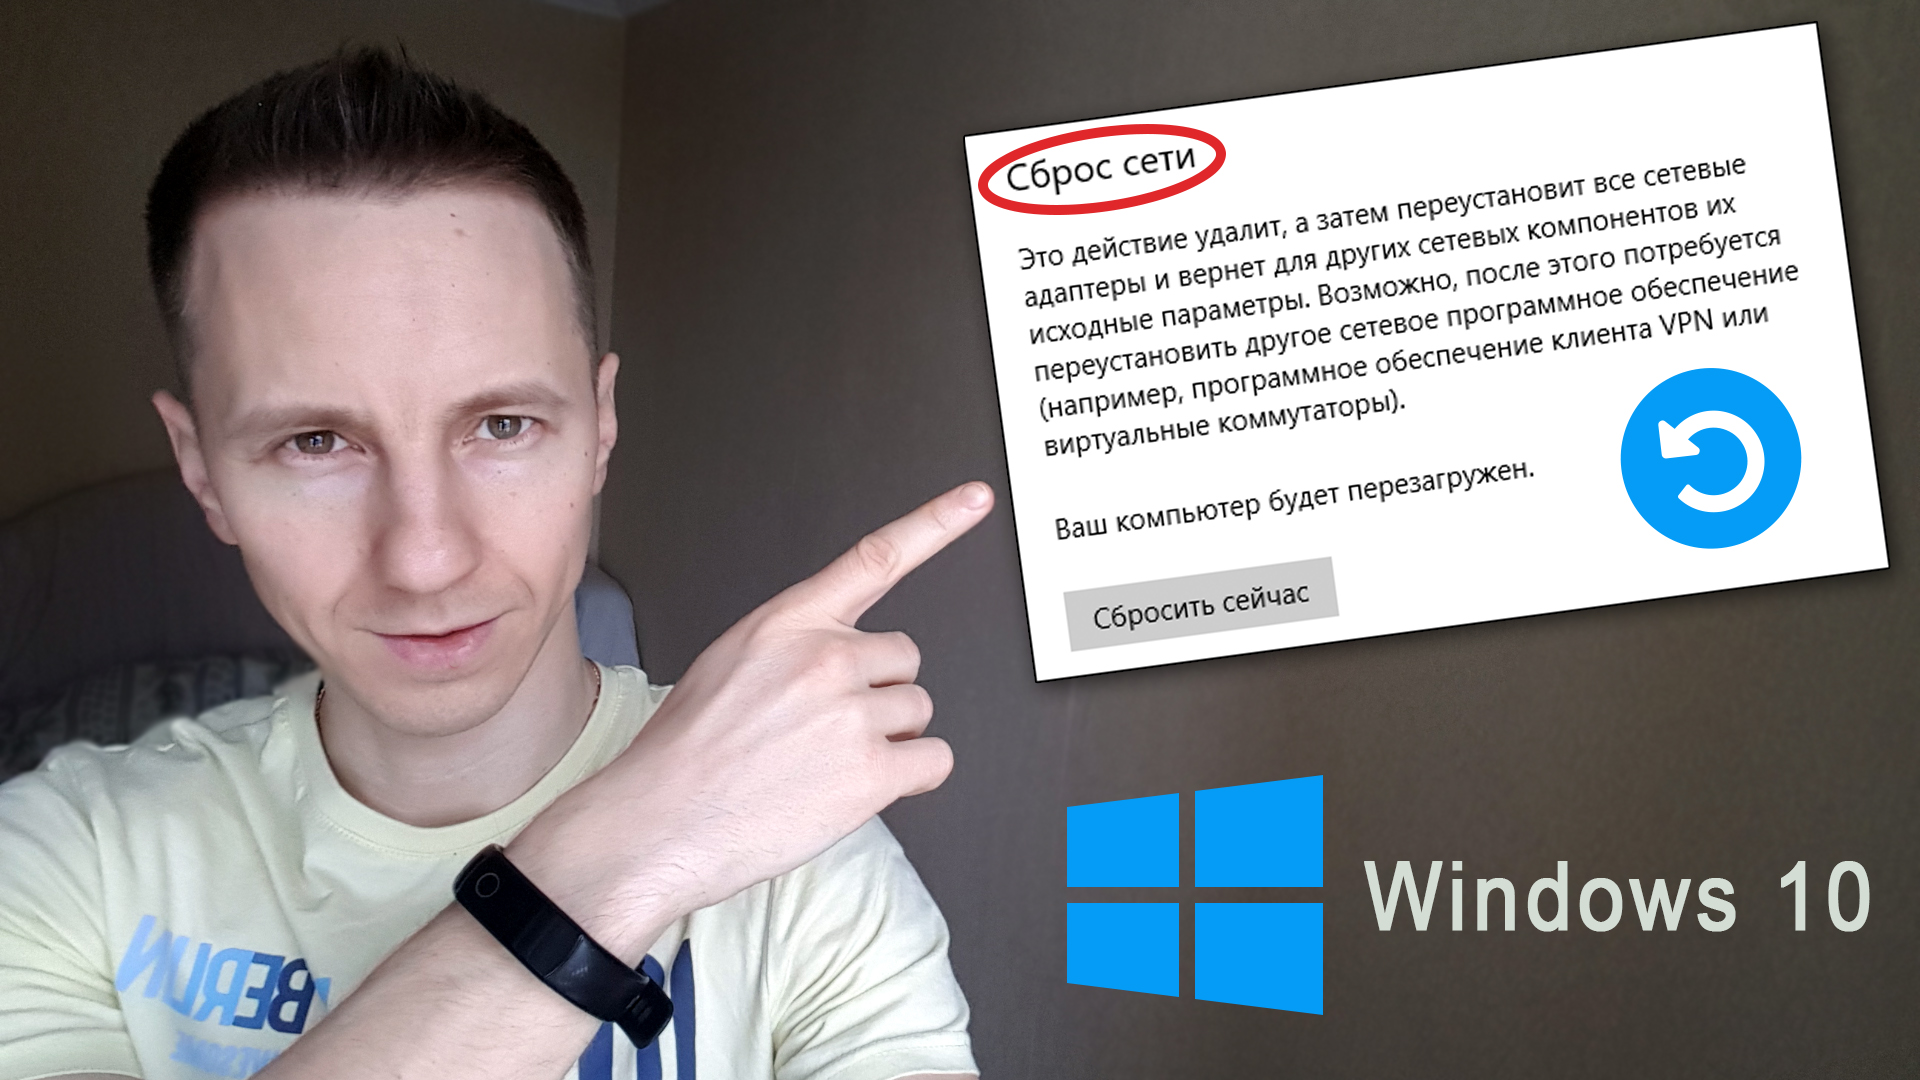 Автор статьи Владимир Белев, окно сброса настроек сети Windows 10, логотип операционной системы.